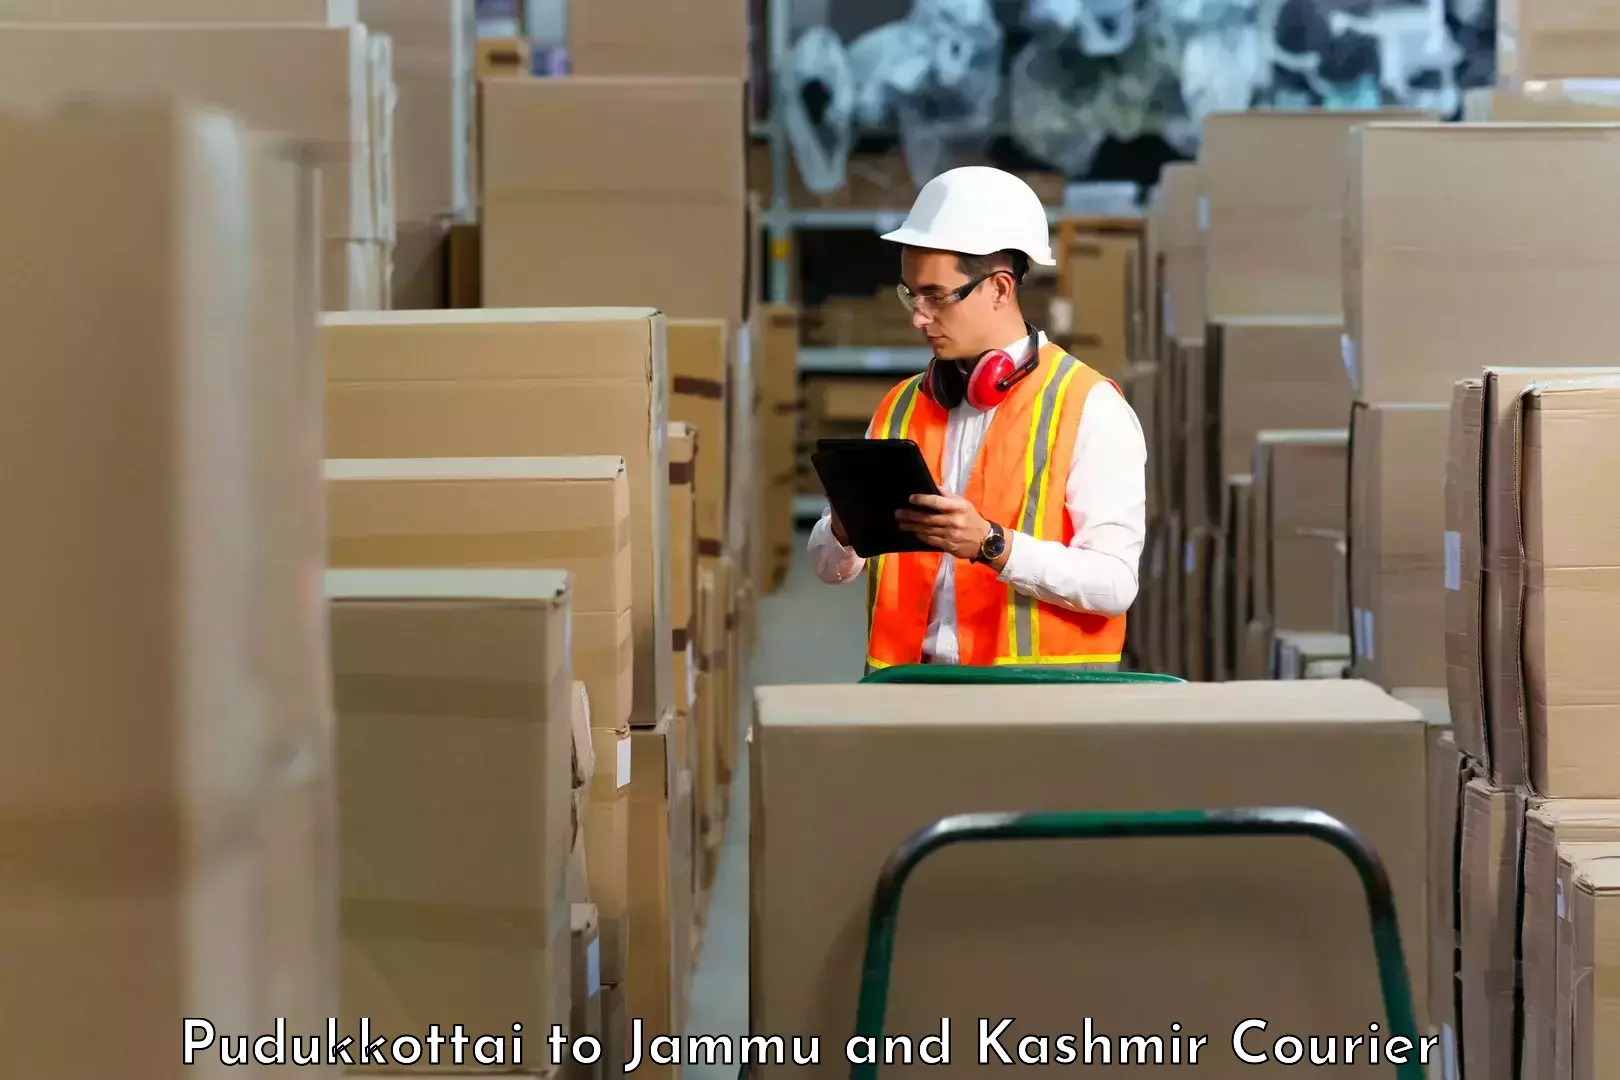 Cash on delivery service Pudukkottai to IIT Jammu